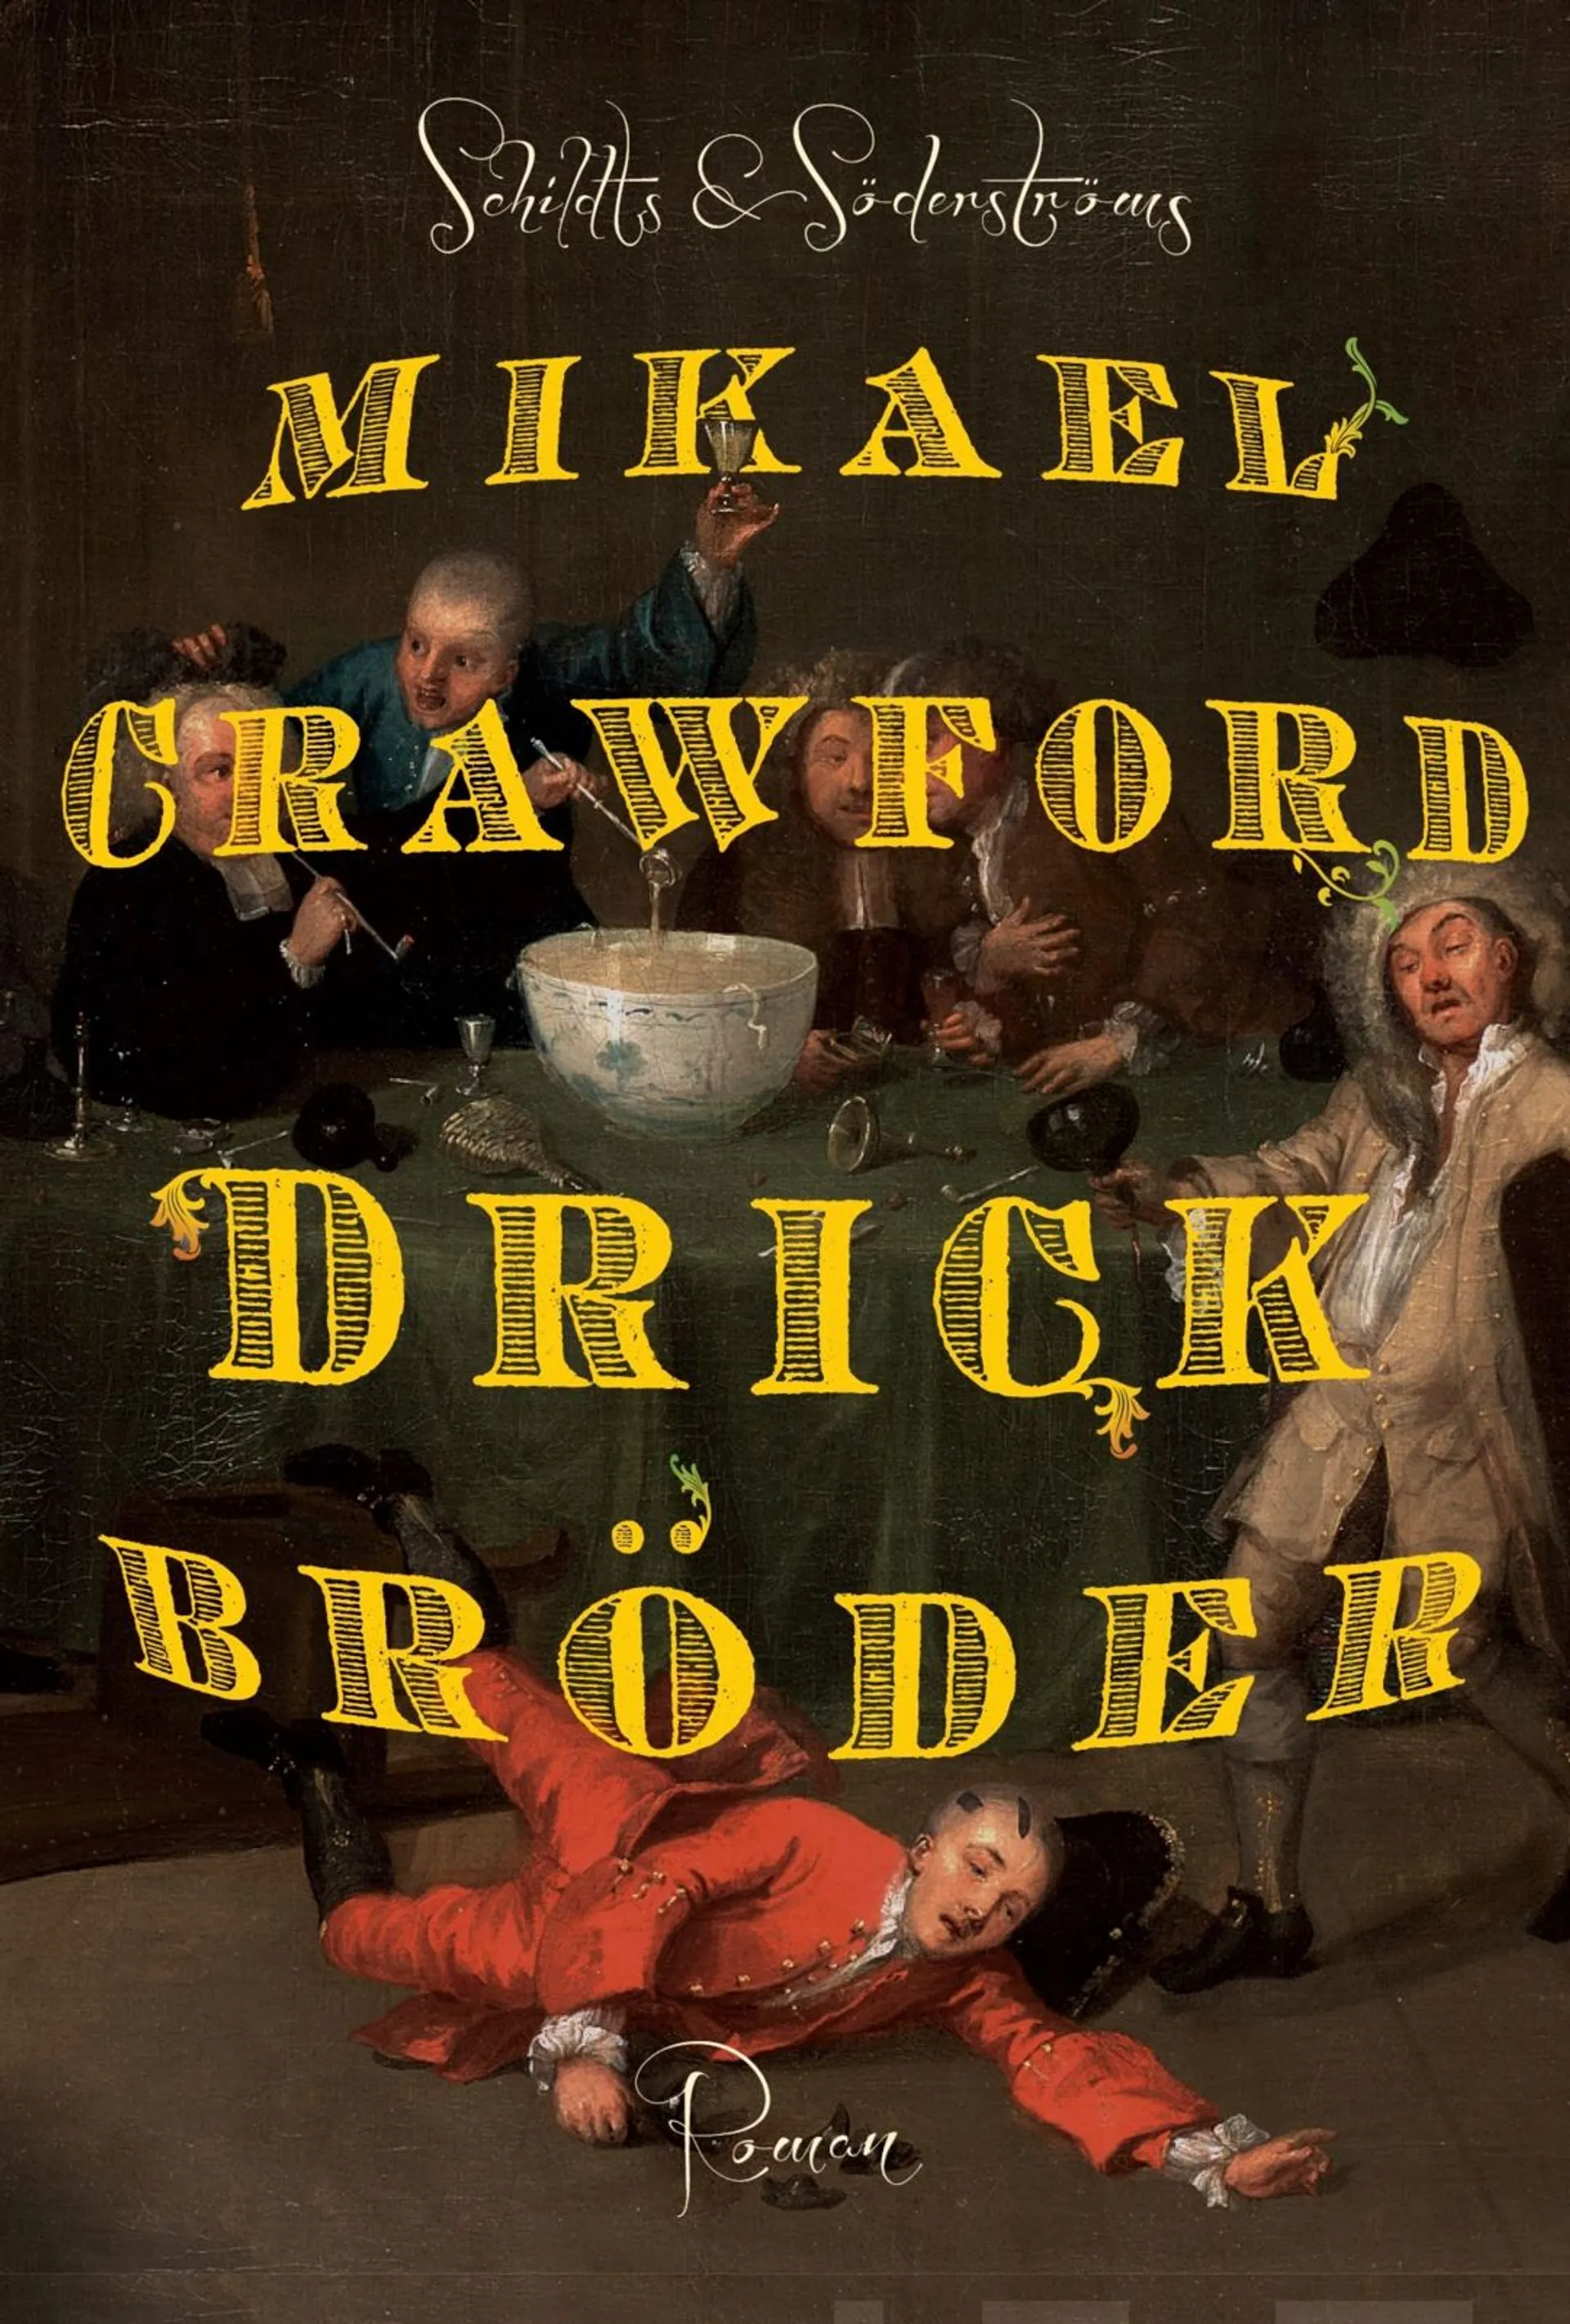 Crawford, Drick bröder